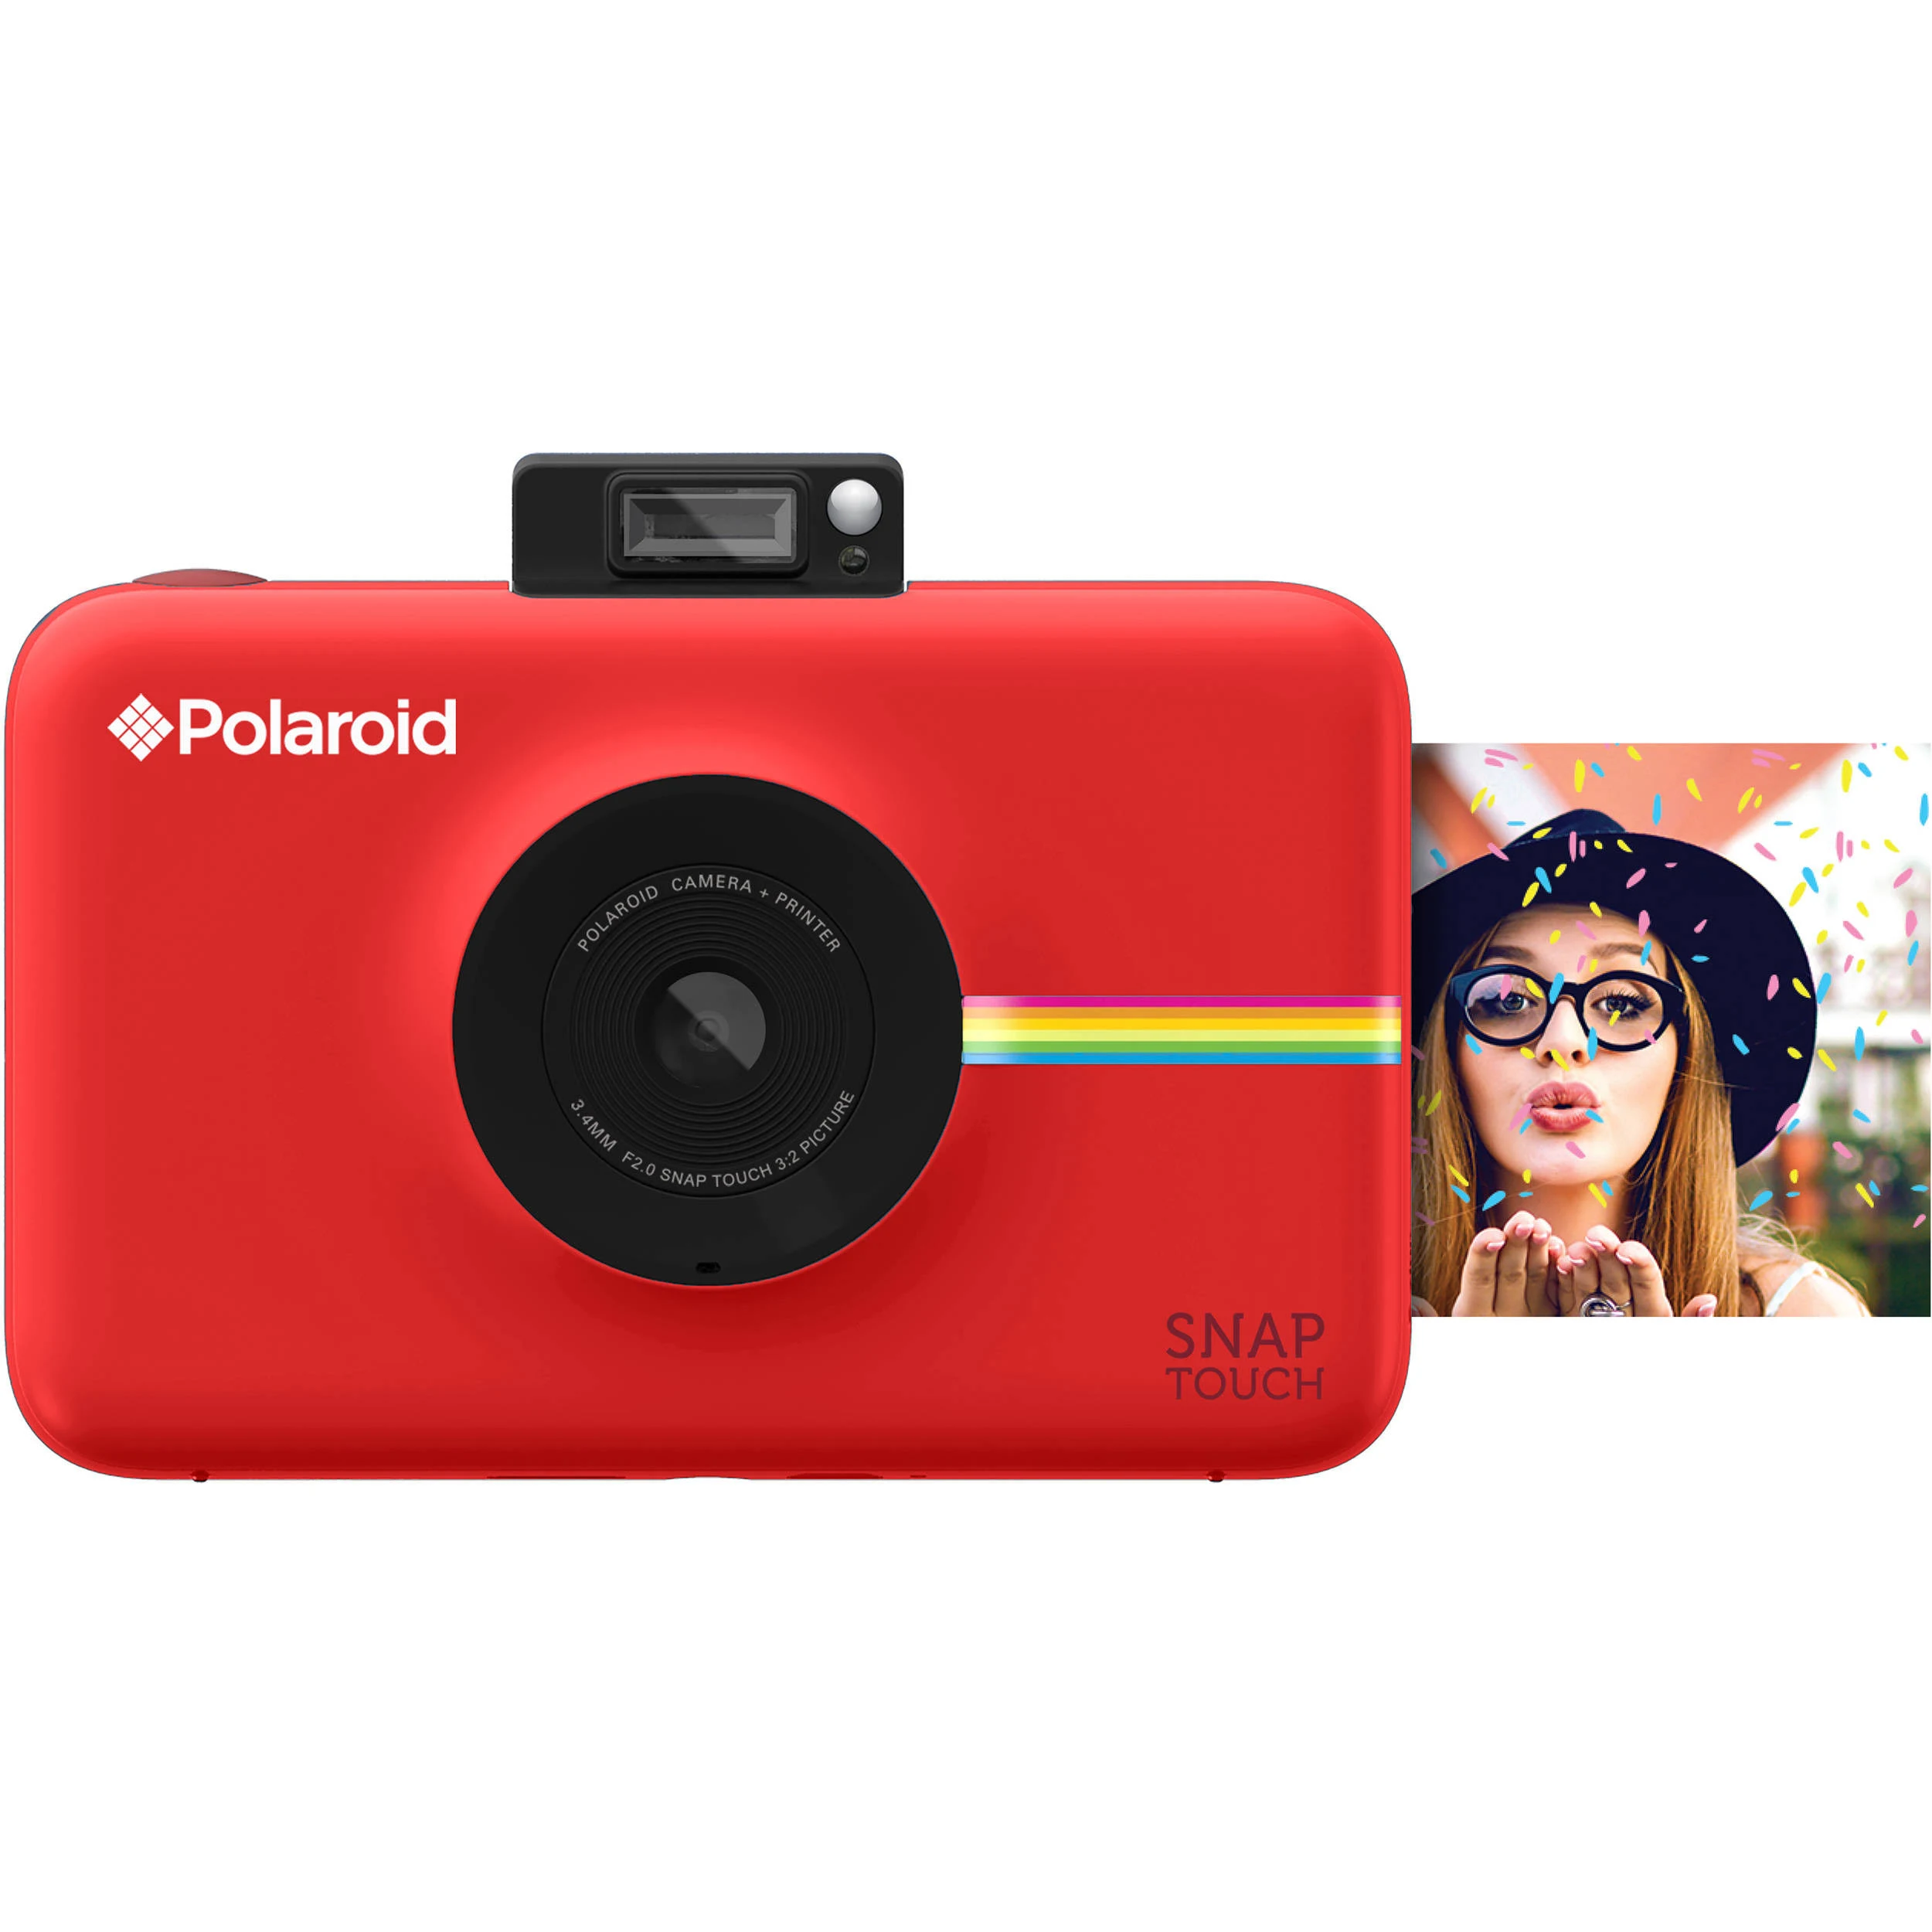 Polaroid Cámara digital de impresión instantánea Snap Touch con pantalla LCD (roja) con tecnología de impresión Zink Zero Ink